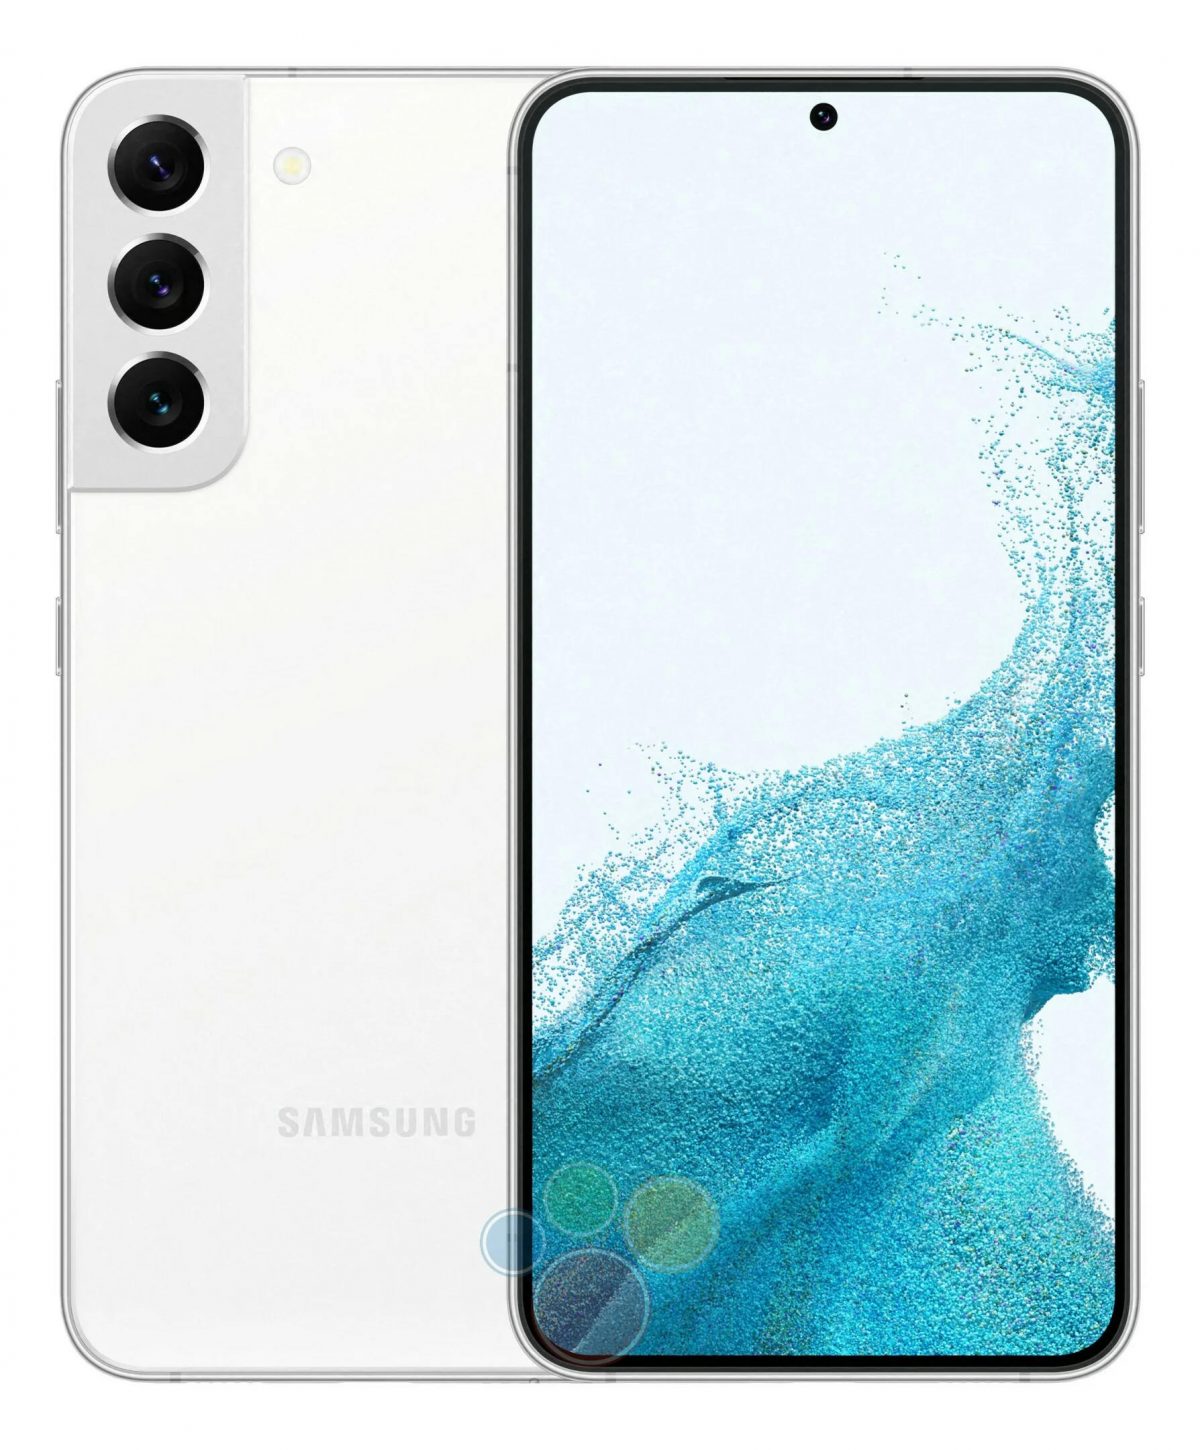 Samsung Galaxy S22 Plus rendery kolory obudowy